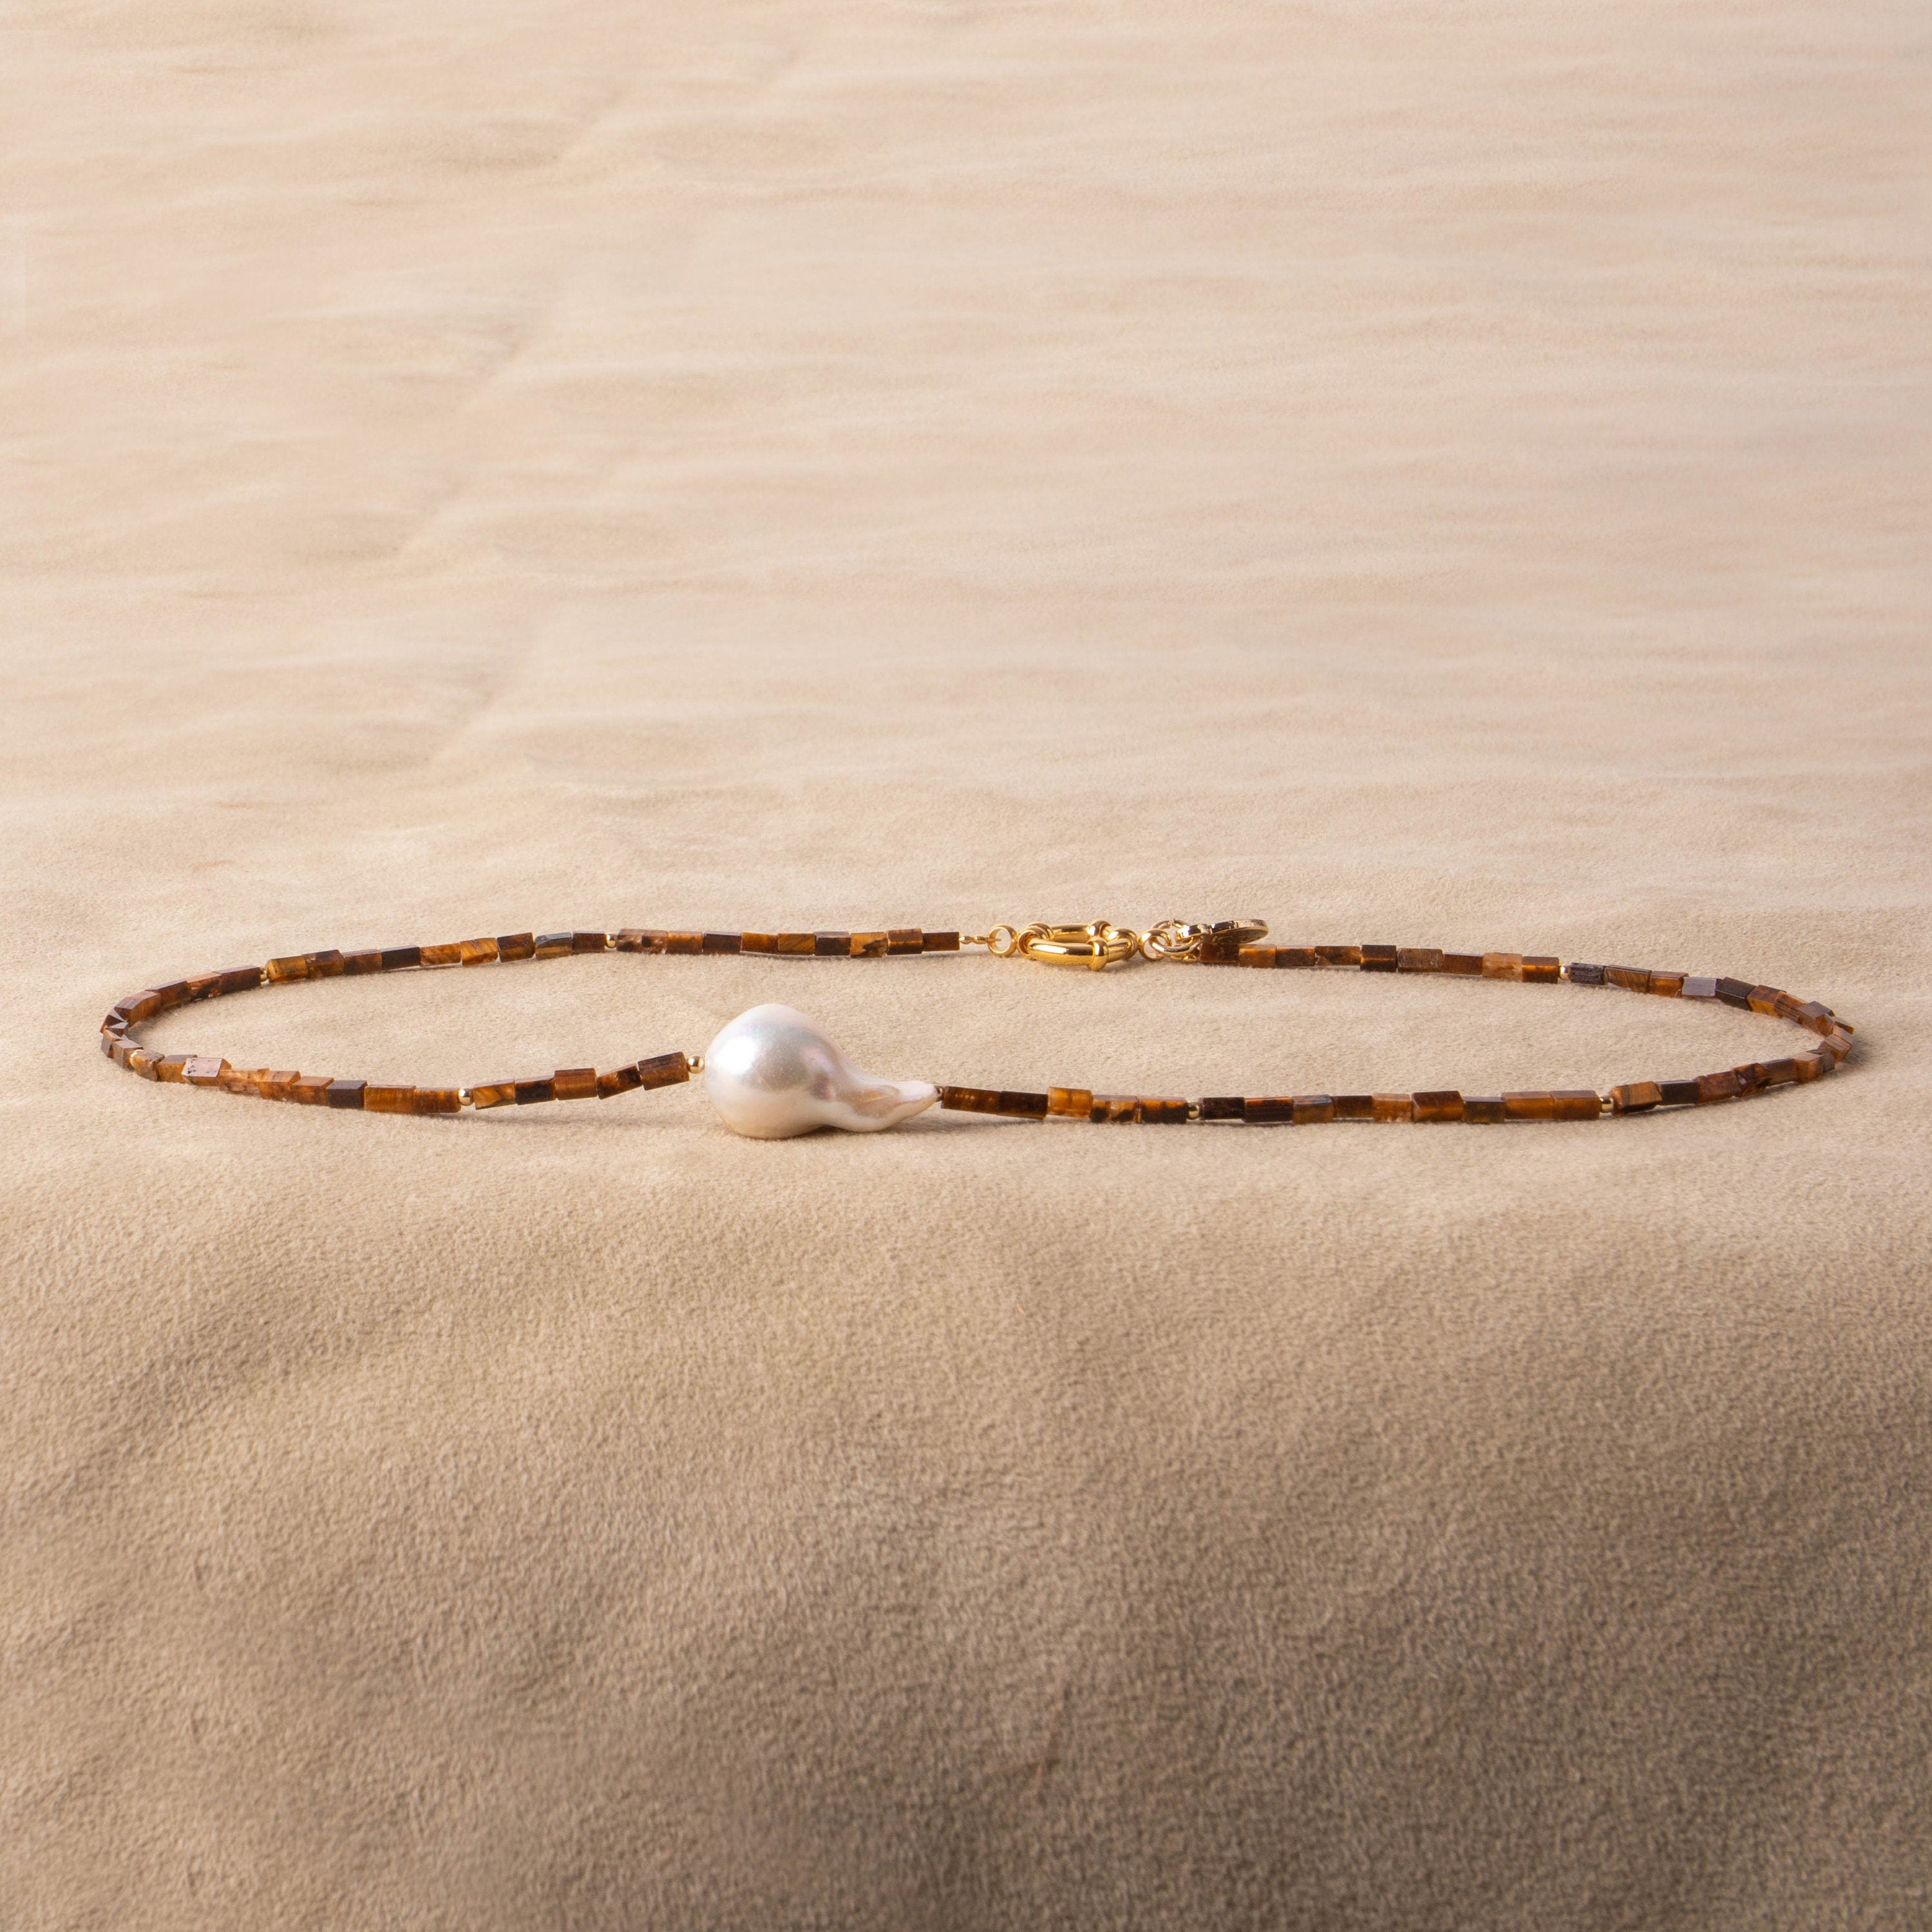 Tigerauge Perlenkette mit Barokperle und vergoldeten Details Perle